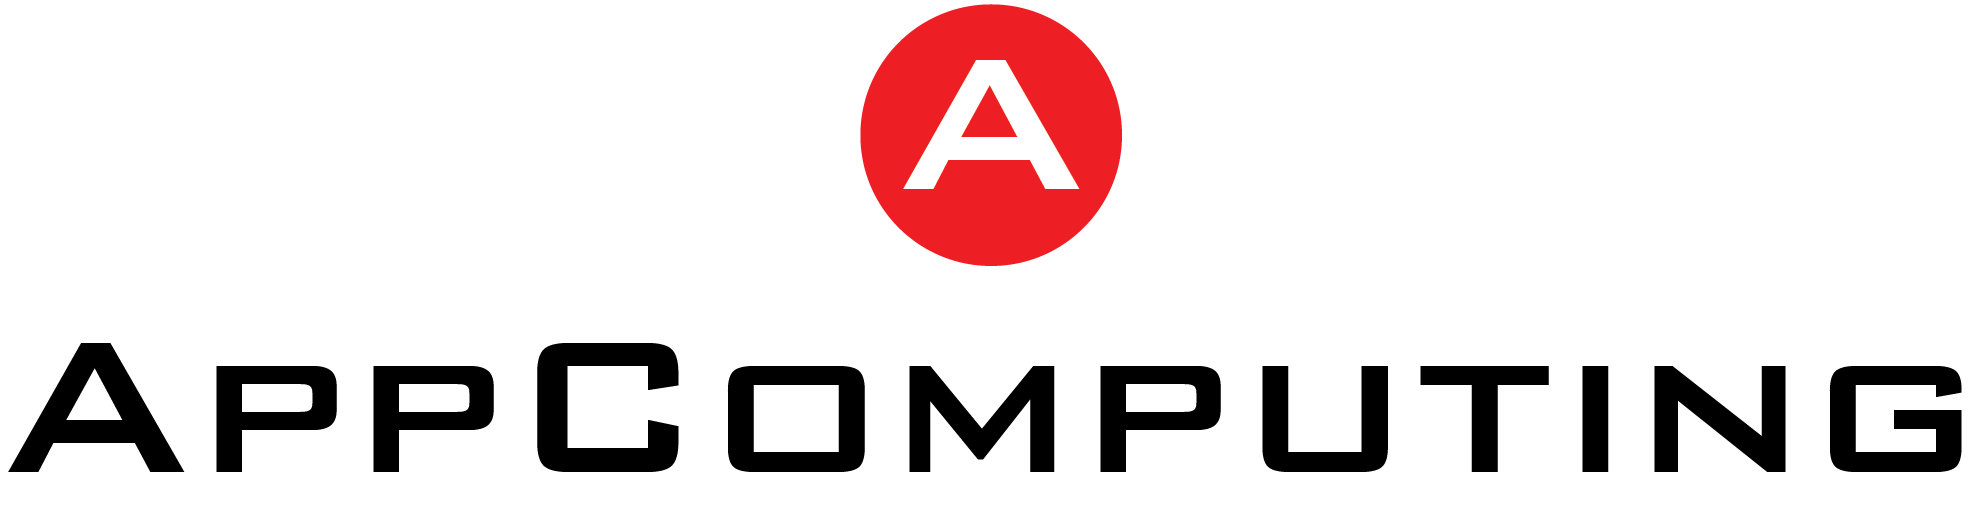 AppComputing, Inc. - AppComputing Ventes Projection basée sur la planification des ressources de fabrication (MRP)